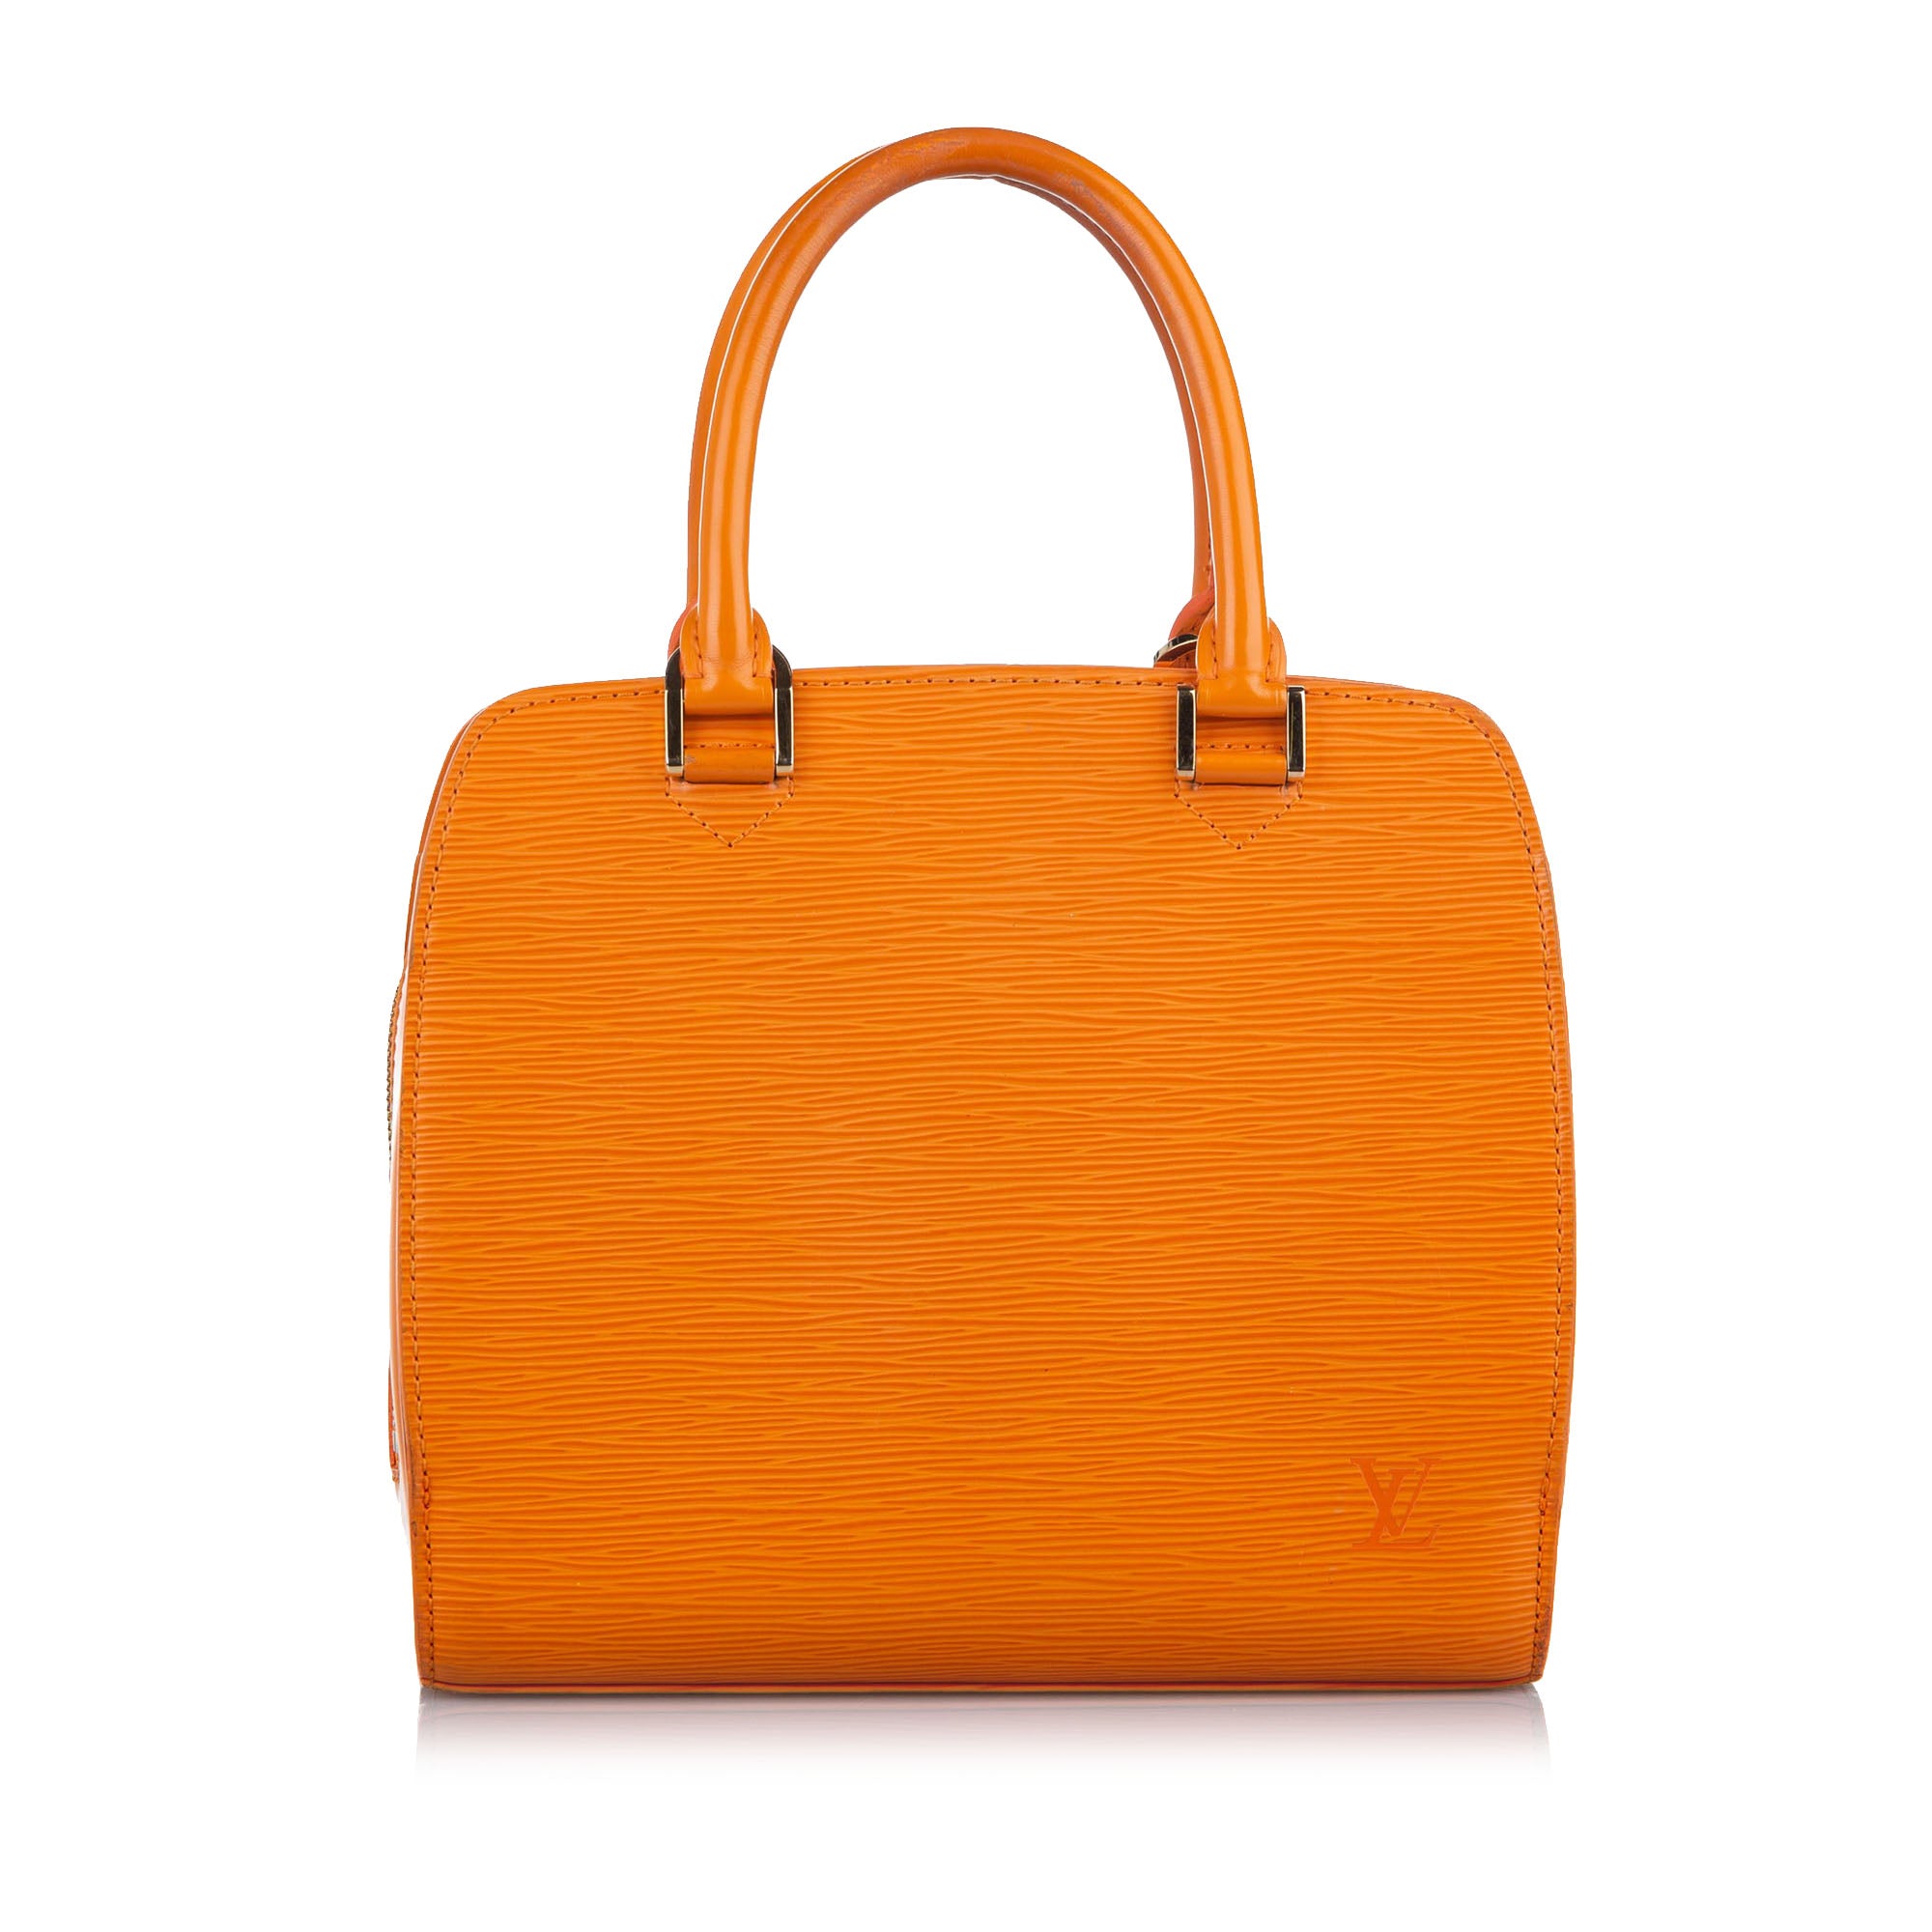 Authentic Louis Vuitton Epi Electric Pont-Neuf PM handbag